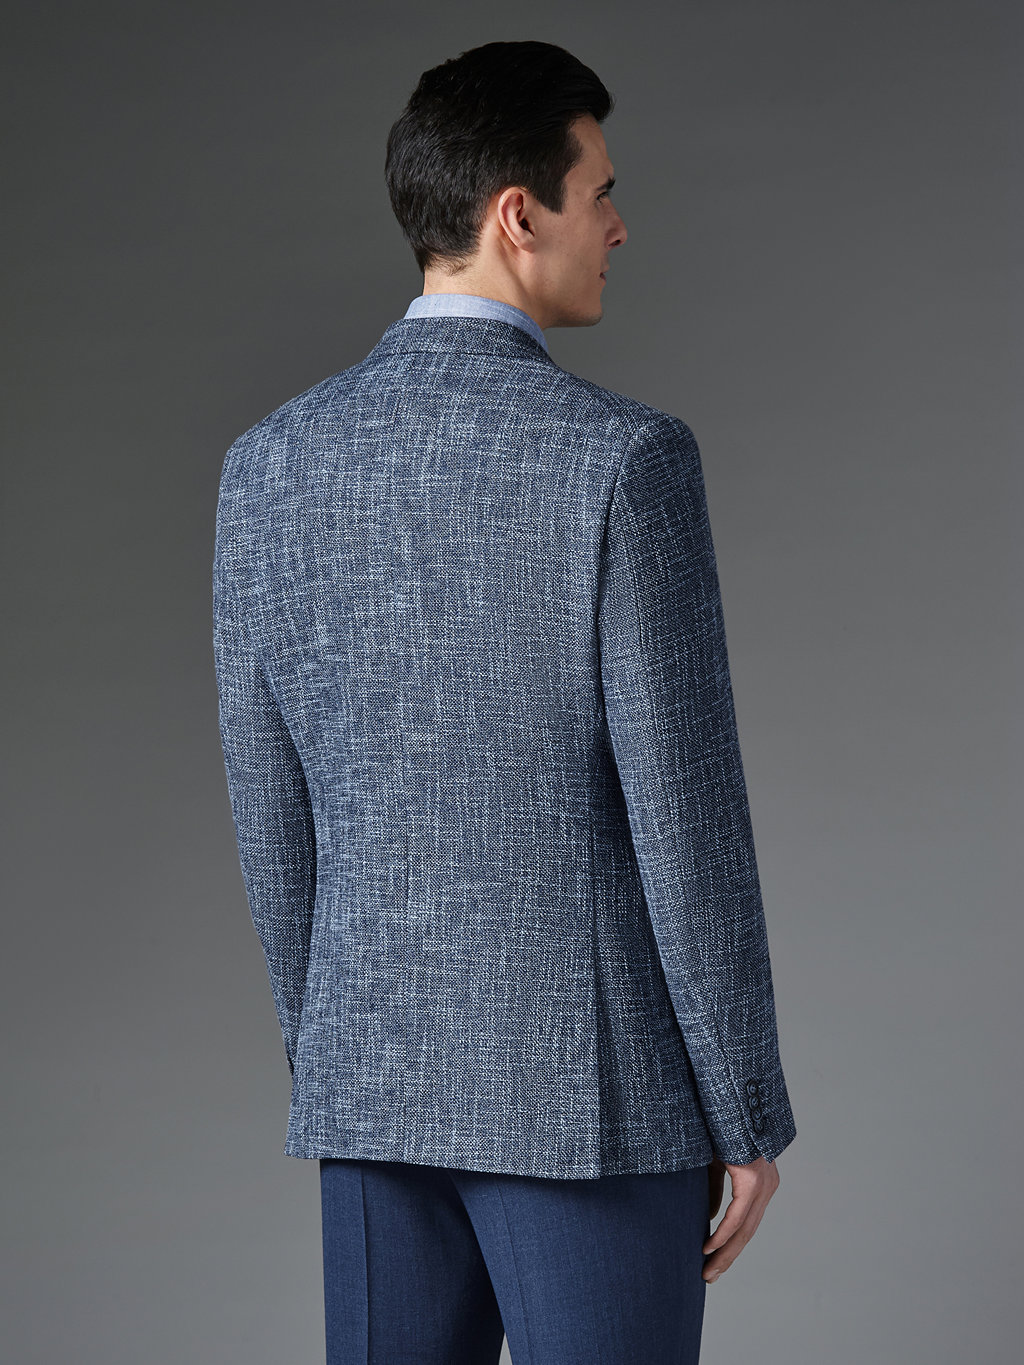 Пиджак из итальянской ткани Vitale Barberis с шелком и льном Slim Fit